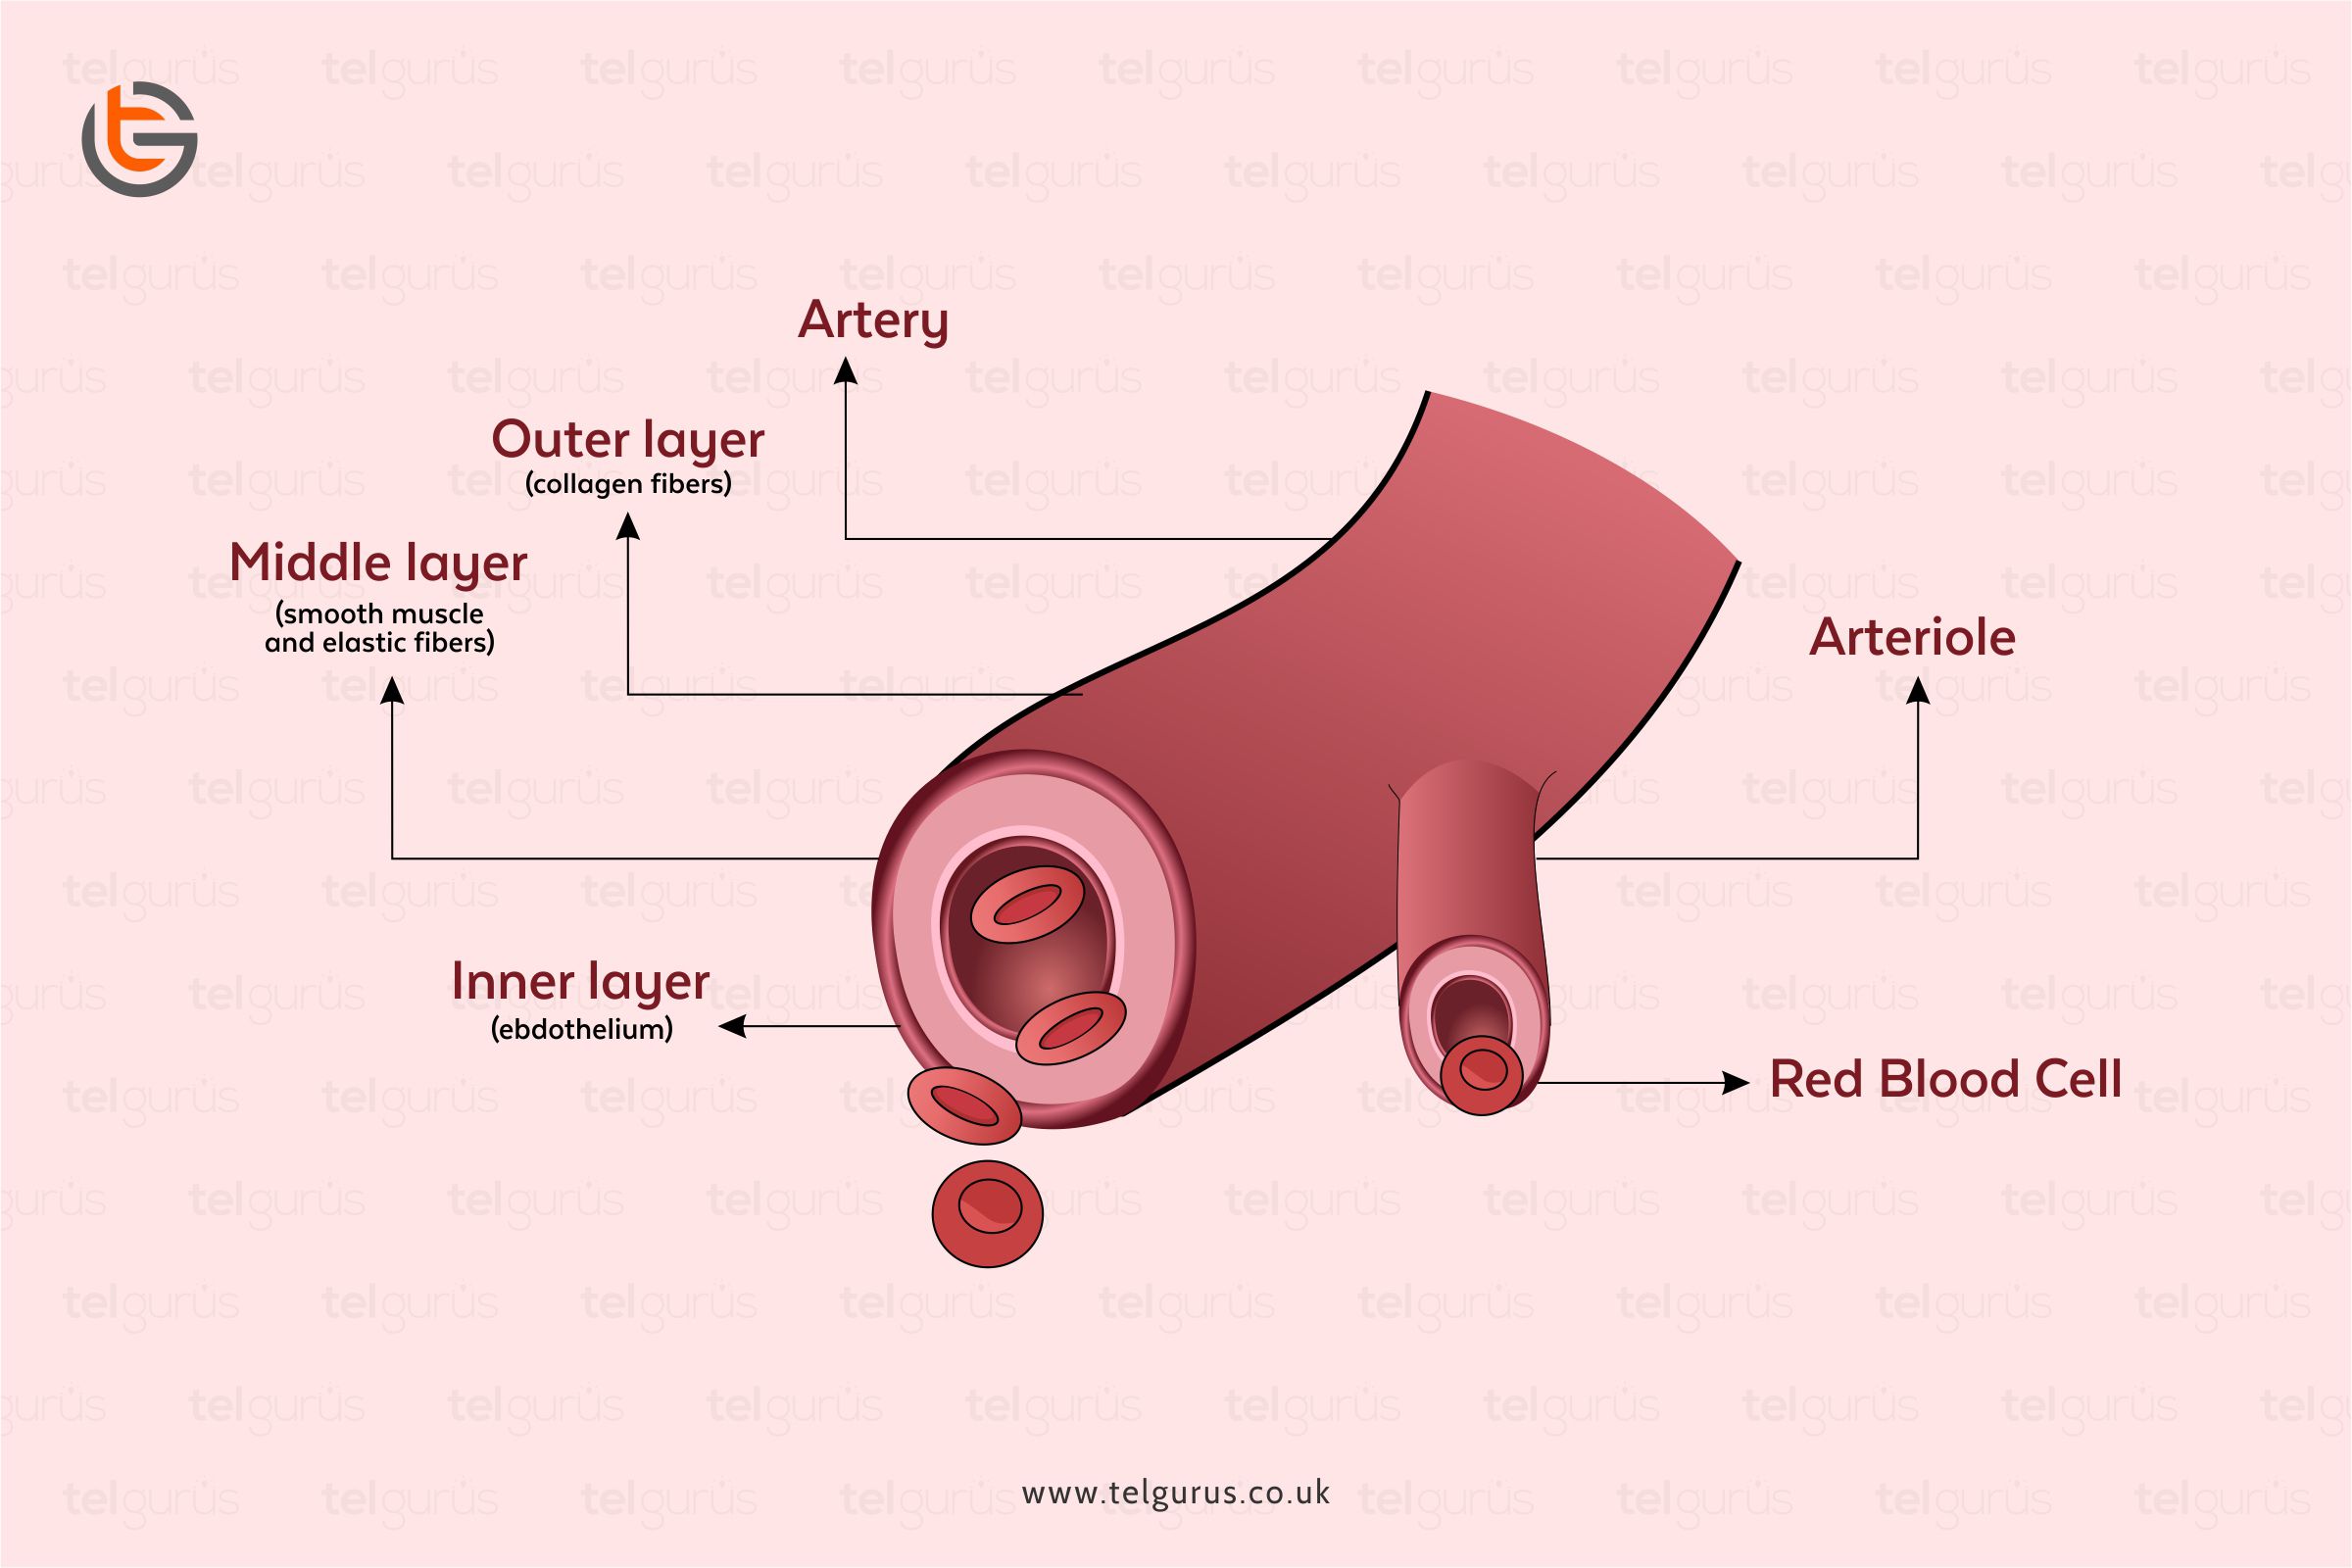 Explain why an artery may be described as an organ.